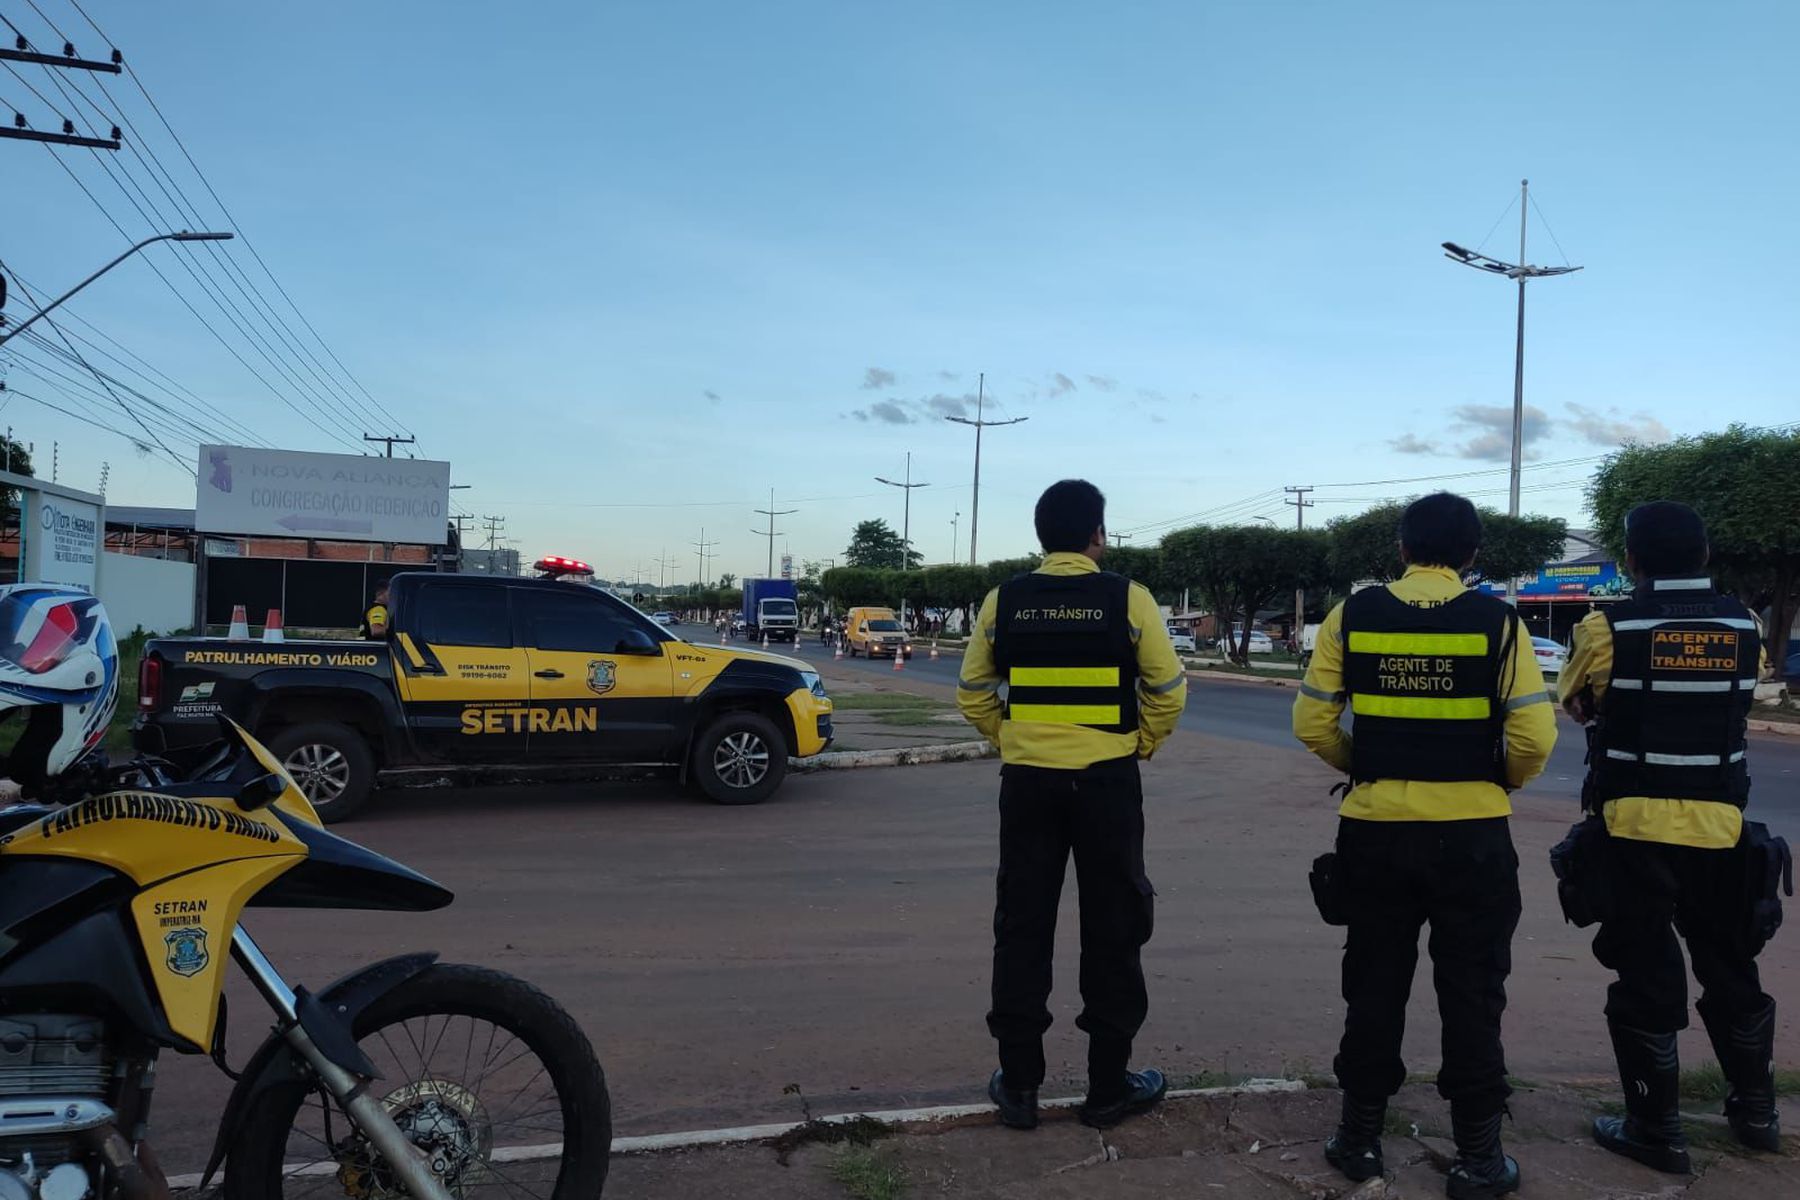 Agentes de trânsito monitoram e organizam fluxo na Avenida Pedro Neiva de Santana